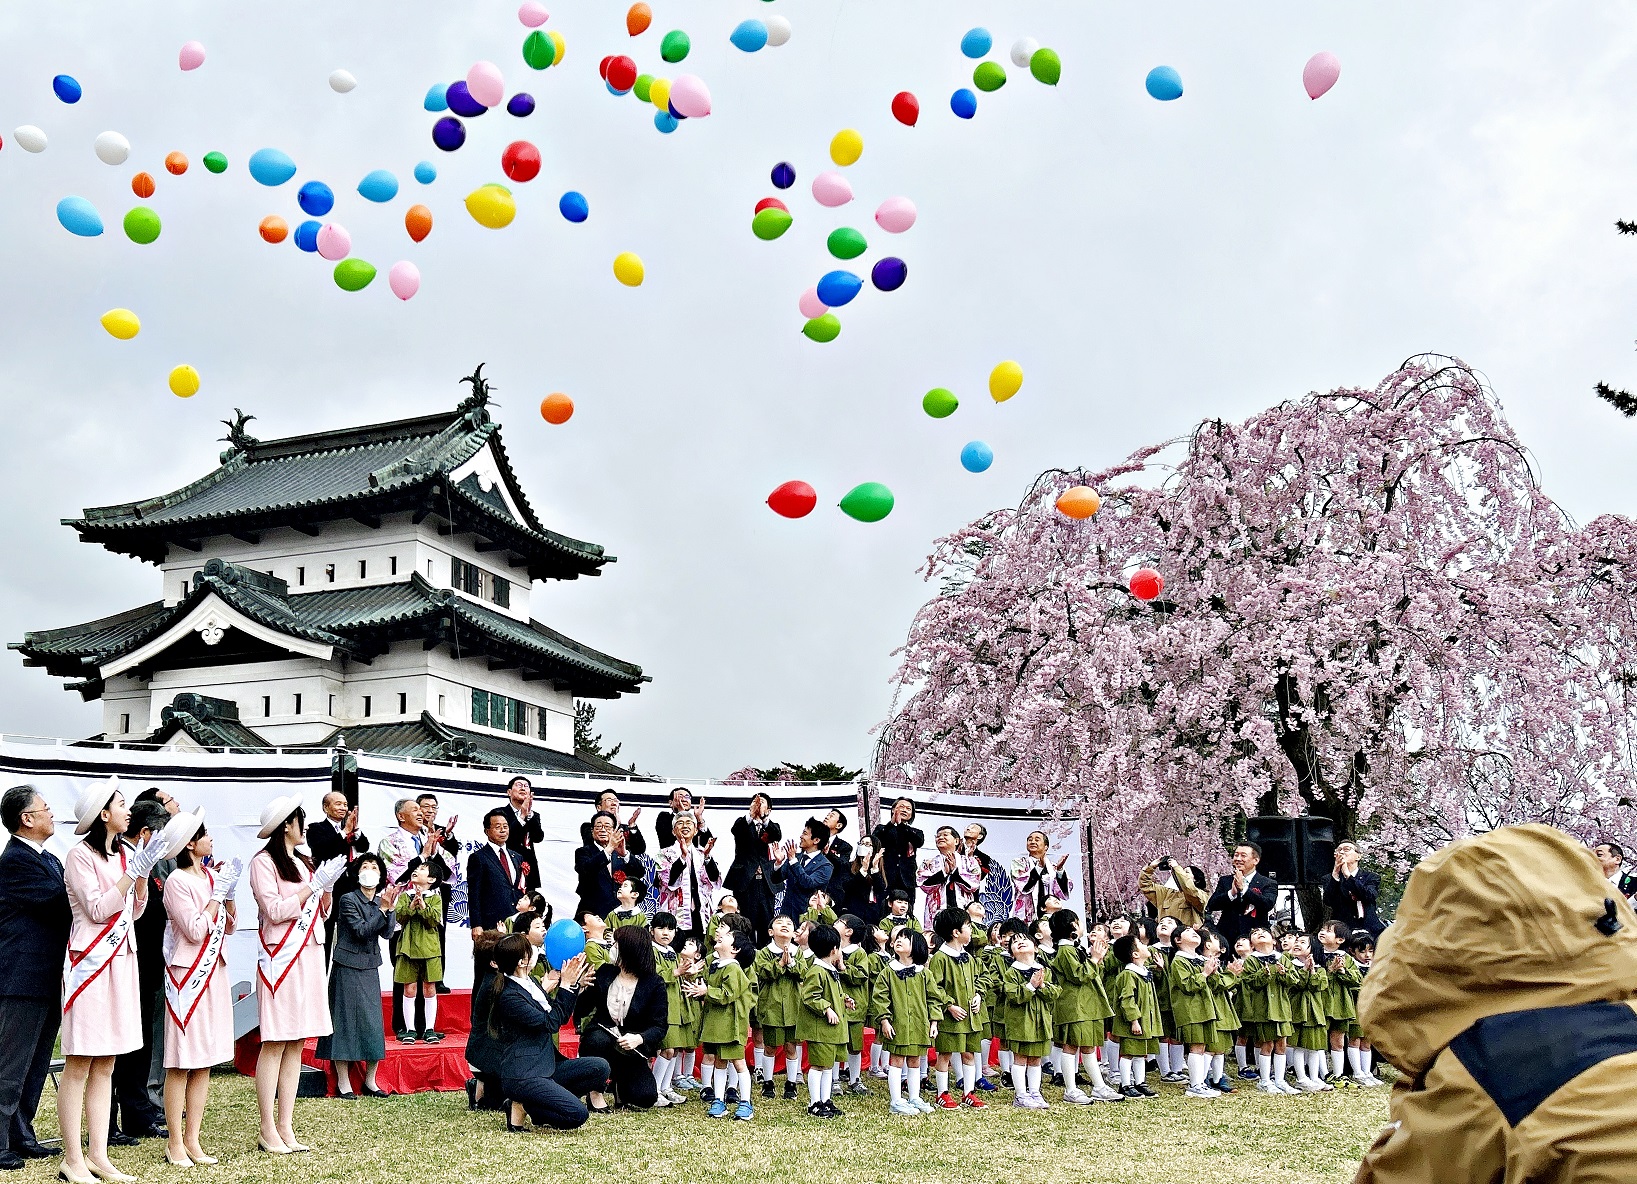 日本青森縣弘前市櫻花祭開幕活動 宣傳臺南400促進城市交流與國際觀光推廣